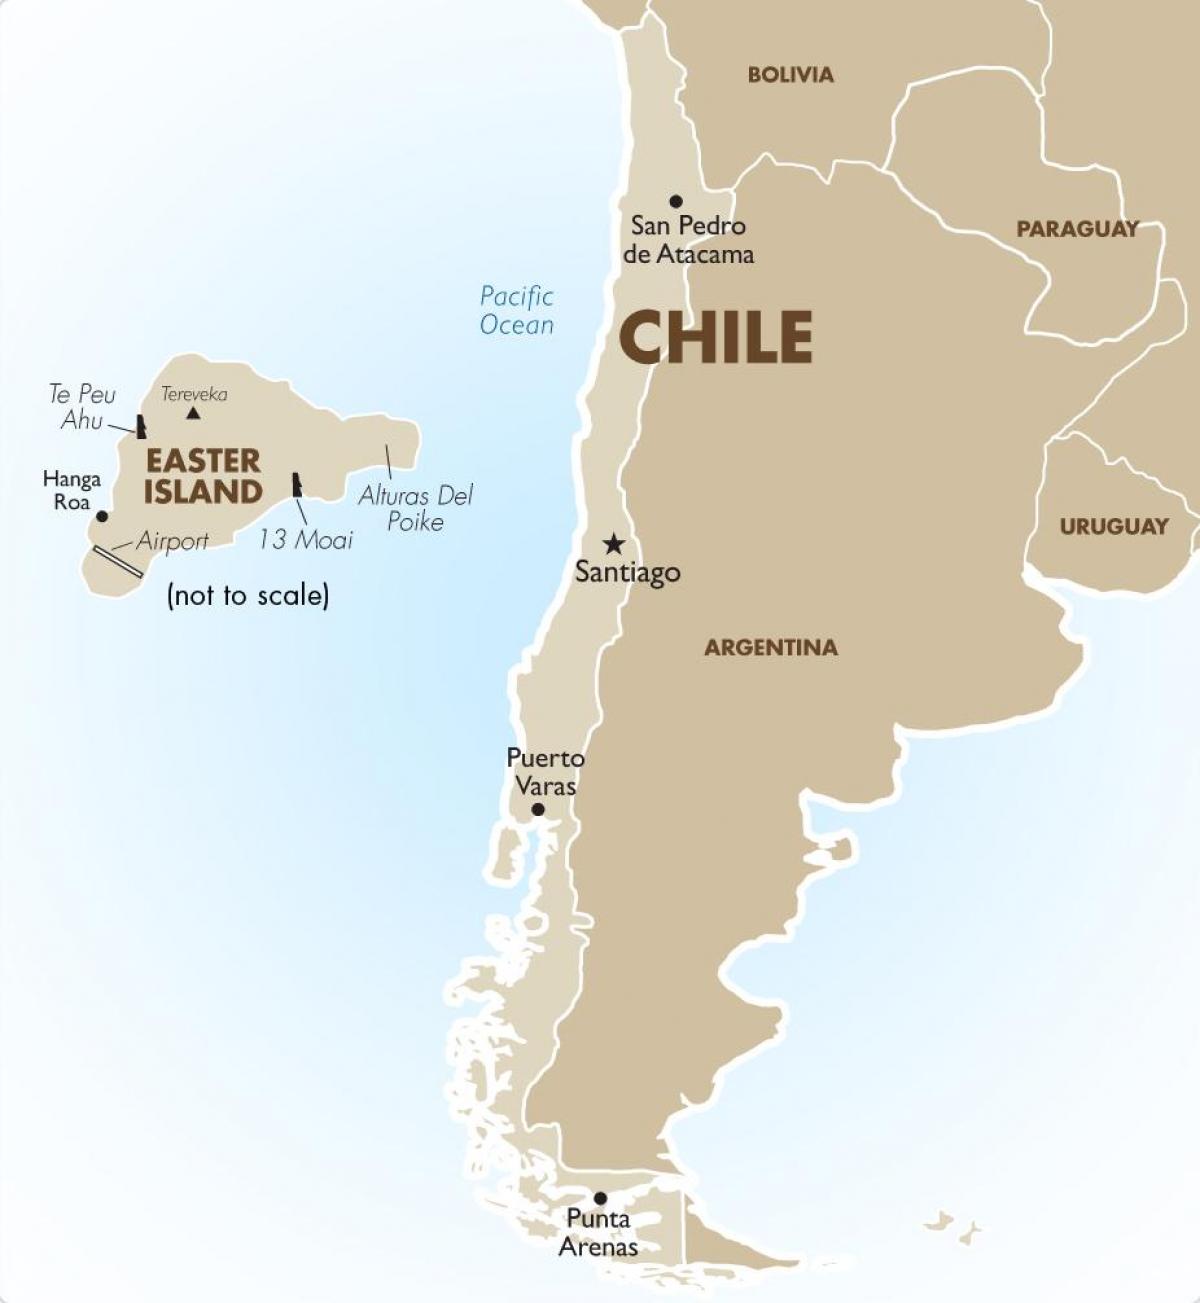 Chile ay mapa